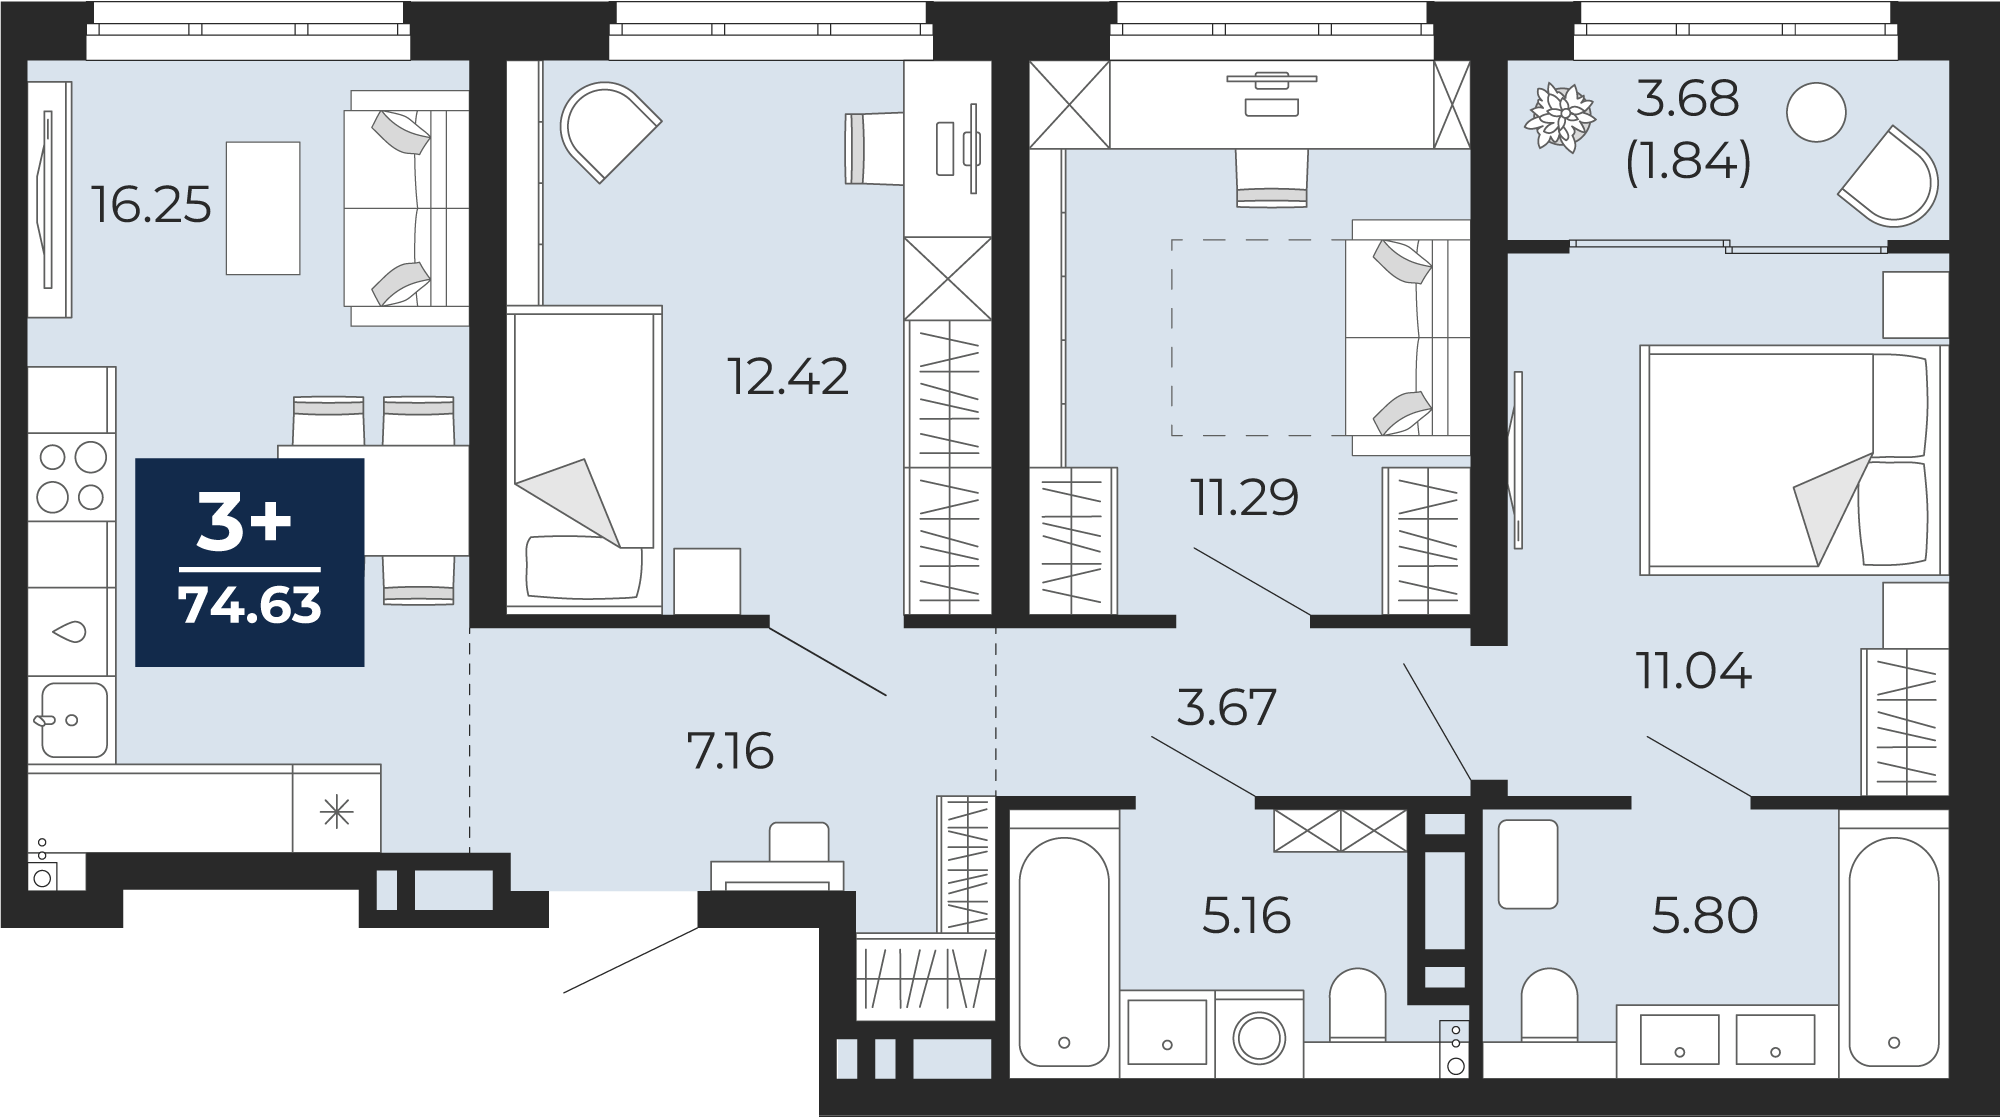 Квартира № 273, 3-комнатная, 74.63 кв. м, 11 этаж